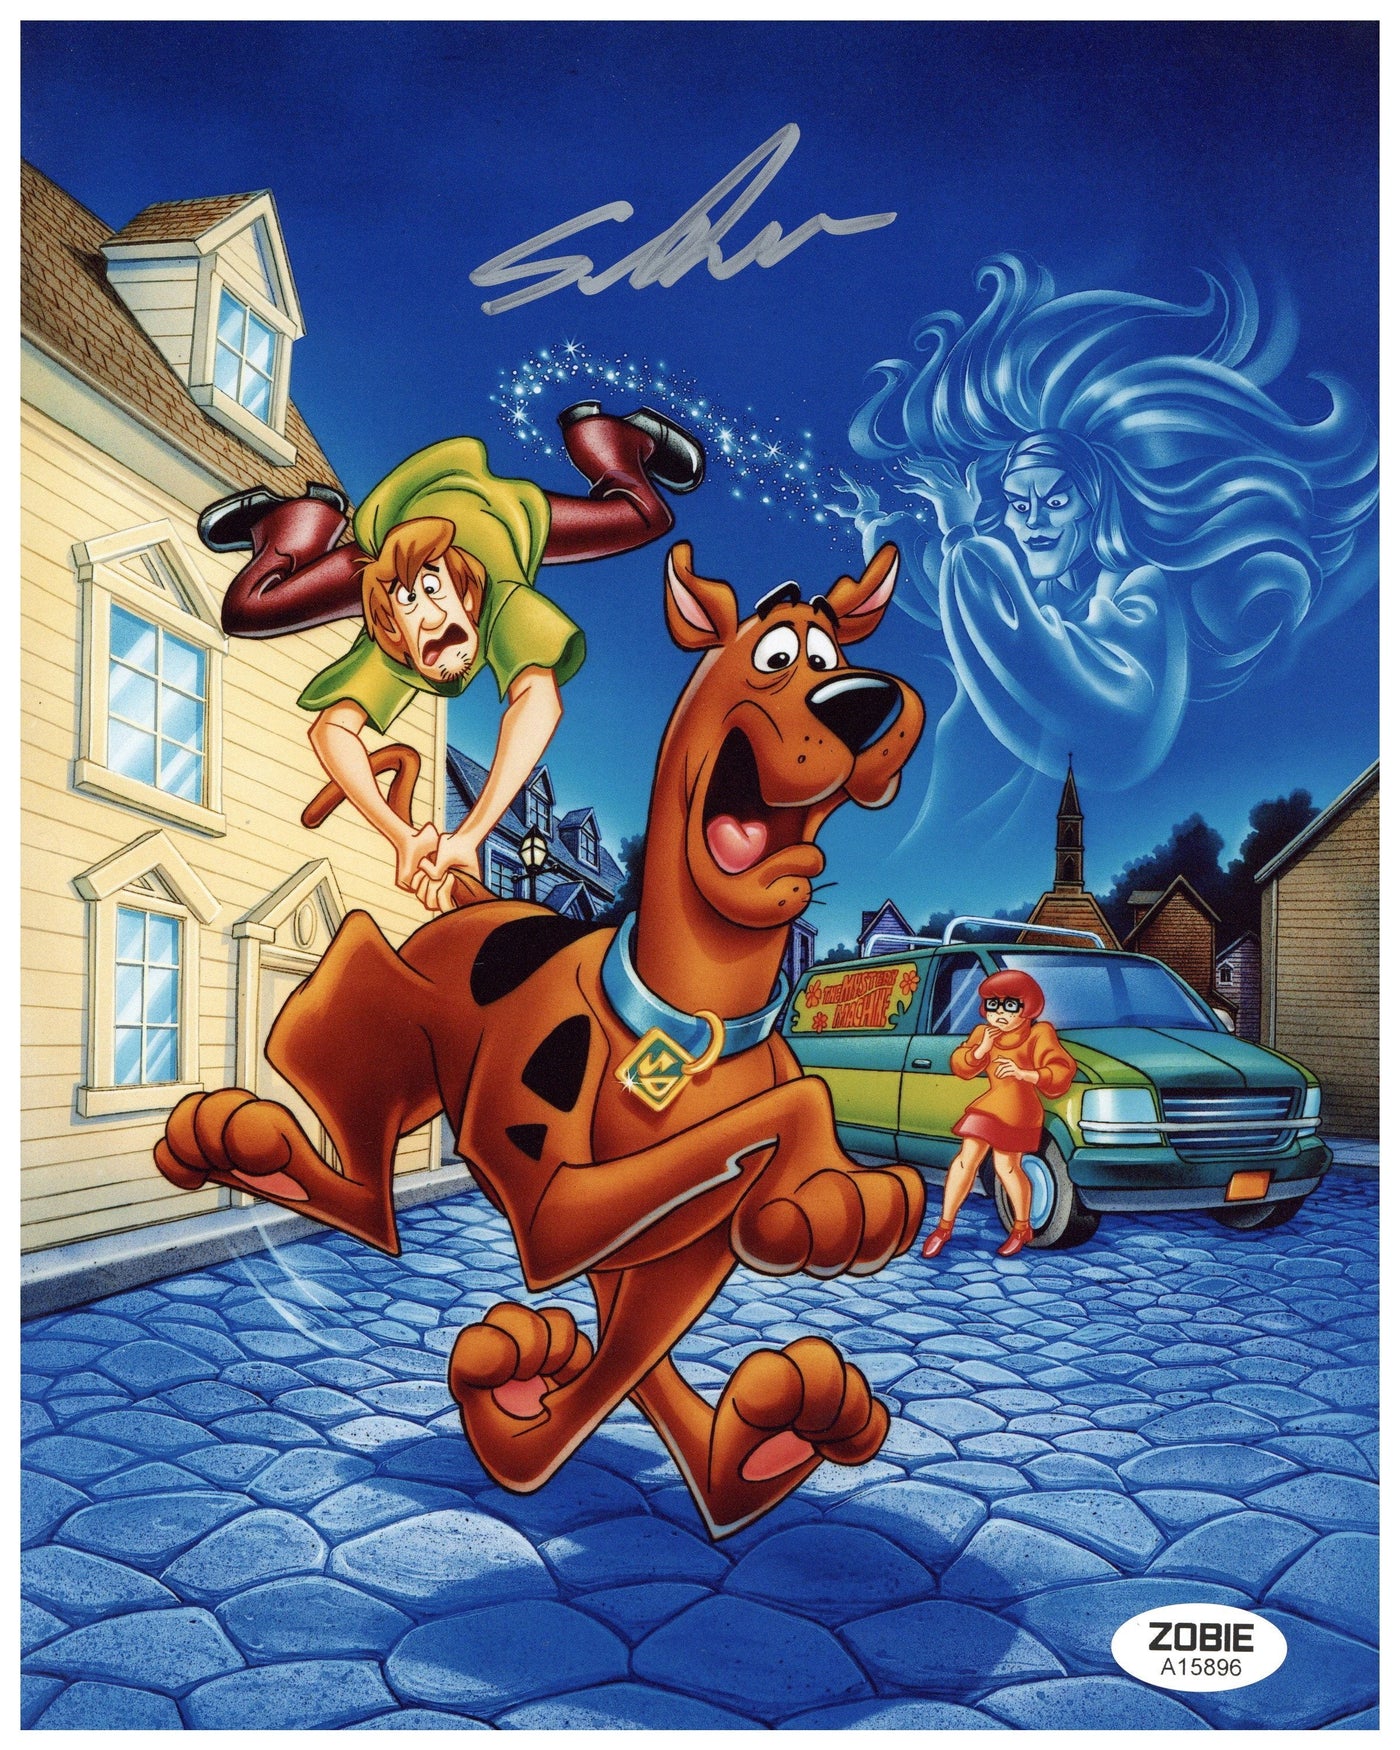 Scott Innes Signed 8x10 Photo Scooby Doo Autographed Zobie COA